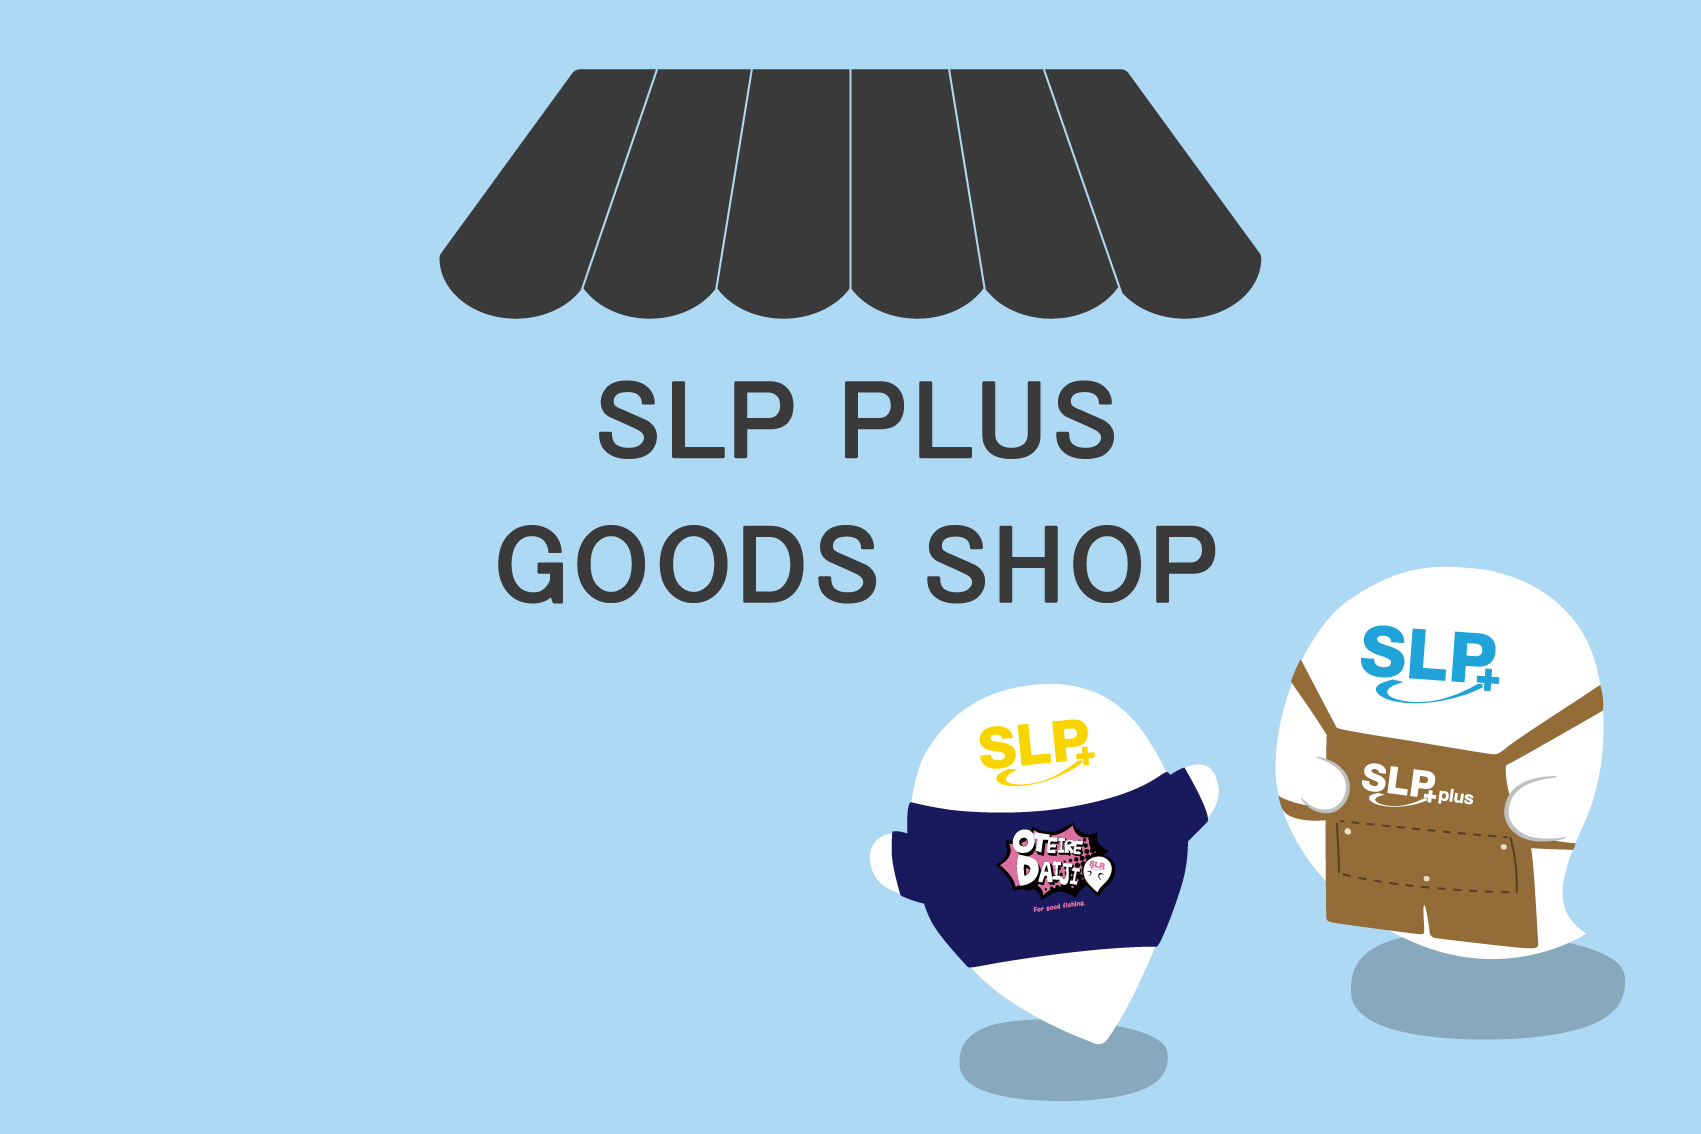 SLP PLUS goods